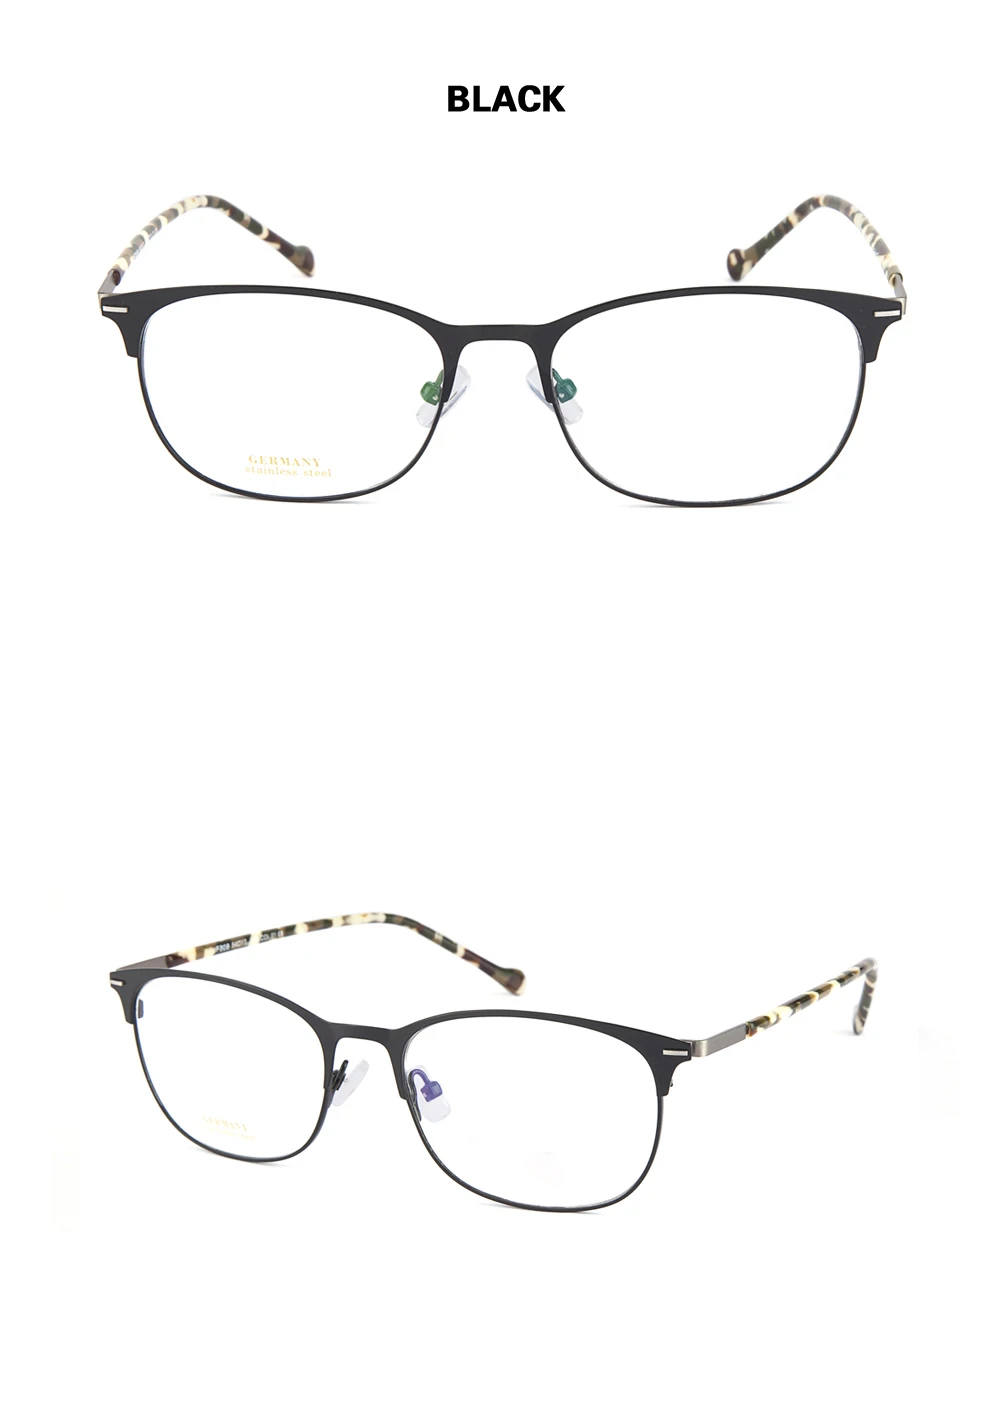 Yi Цзян Нань бренда оптические очки оправы Для мужчин очки с прозрачной линзой oculos-де-грау masculino женские очки